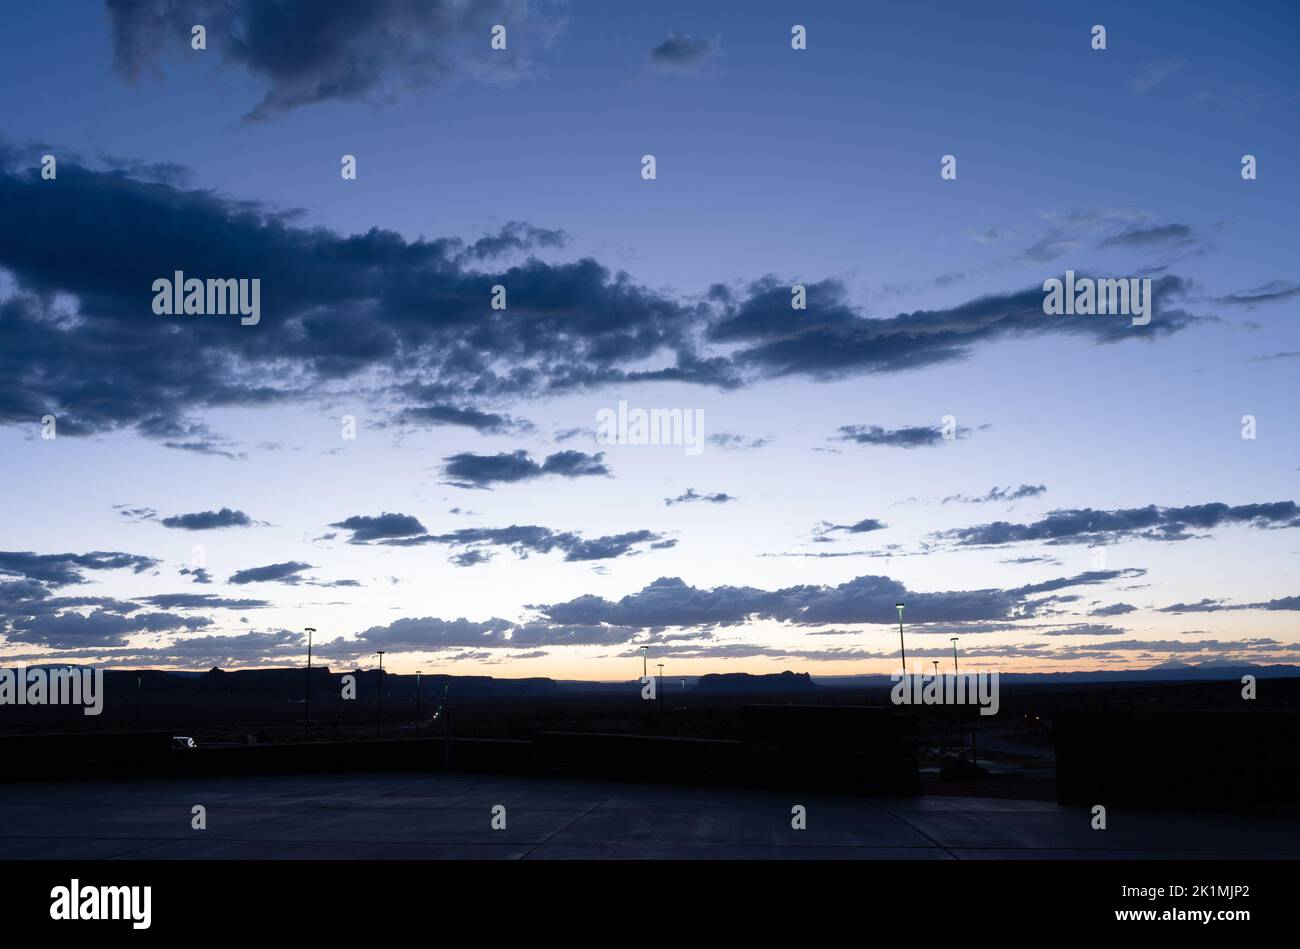 Après le coucher du soleil, le ciel brille d'un bleu profond et des bandes de nuages ombrageux se tiennent au-dessus de l'horizon sombre. Banque D'Images